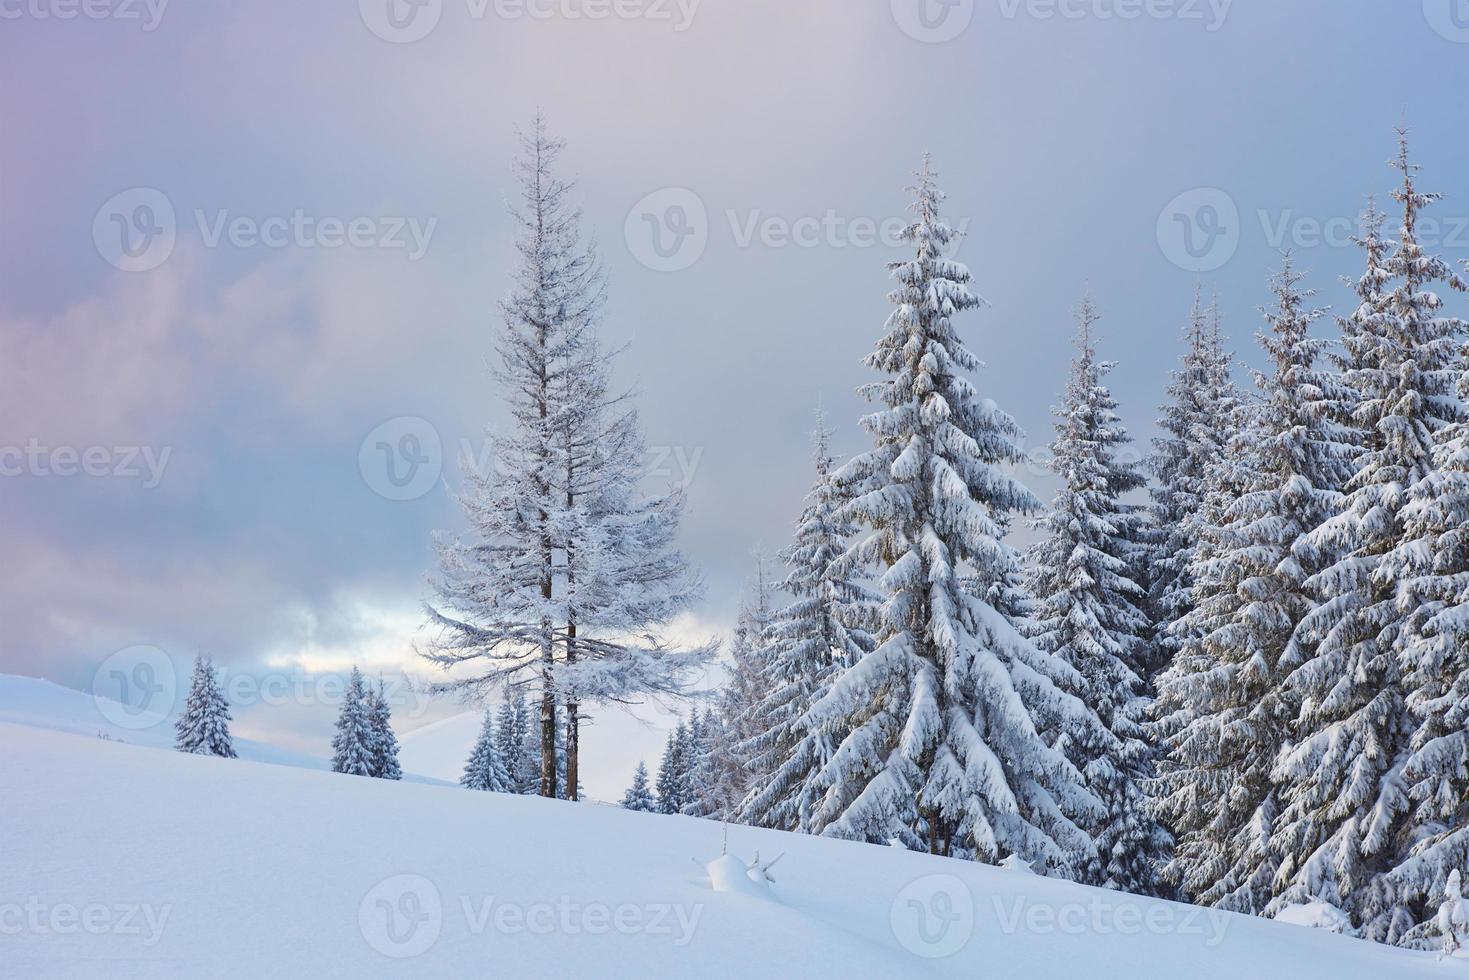 grande foto de inverno nas montanhas dos Cárpatos com pinheiros cobertos de neve. cena colorida ao ar livre, conceito de celebração de feliz ano novo. estilo artístico pós-foto processada